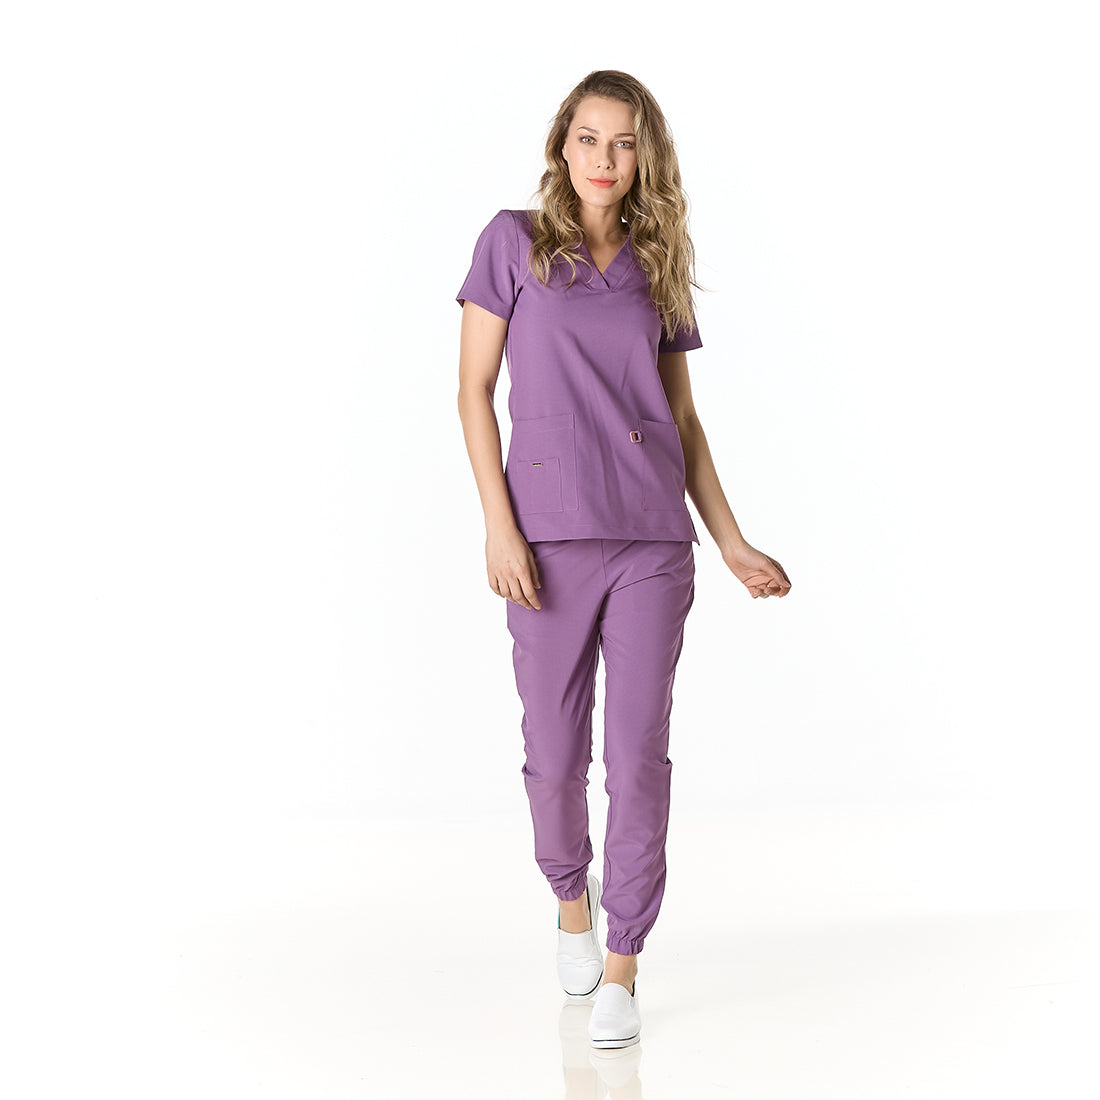 Mujer vistiendo pijama sanitario color morado con cuello en v y pantalon tipo jogger - frontal